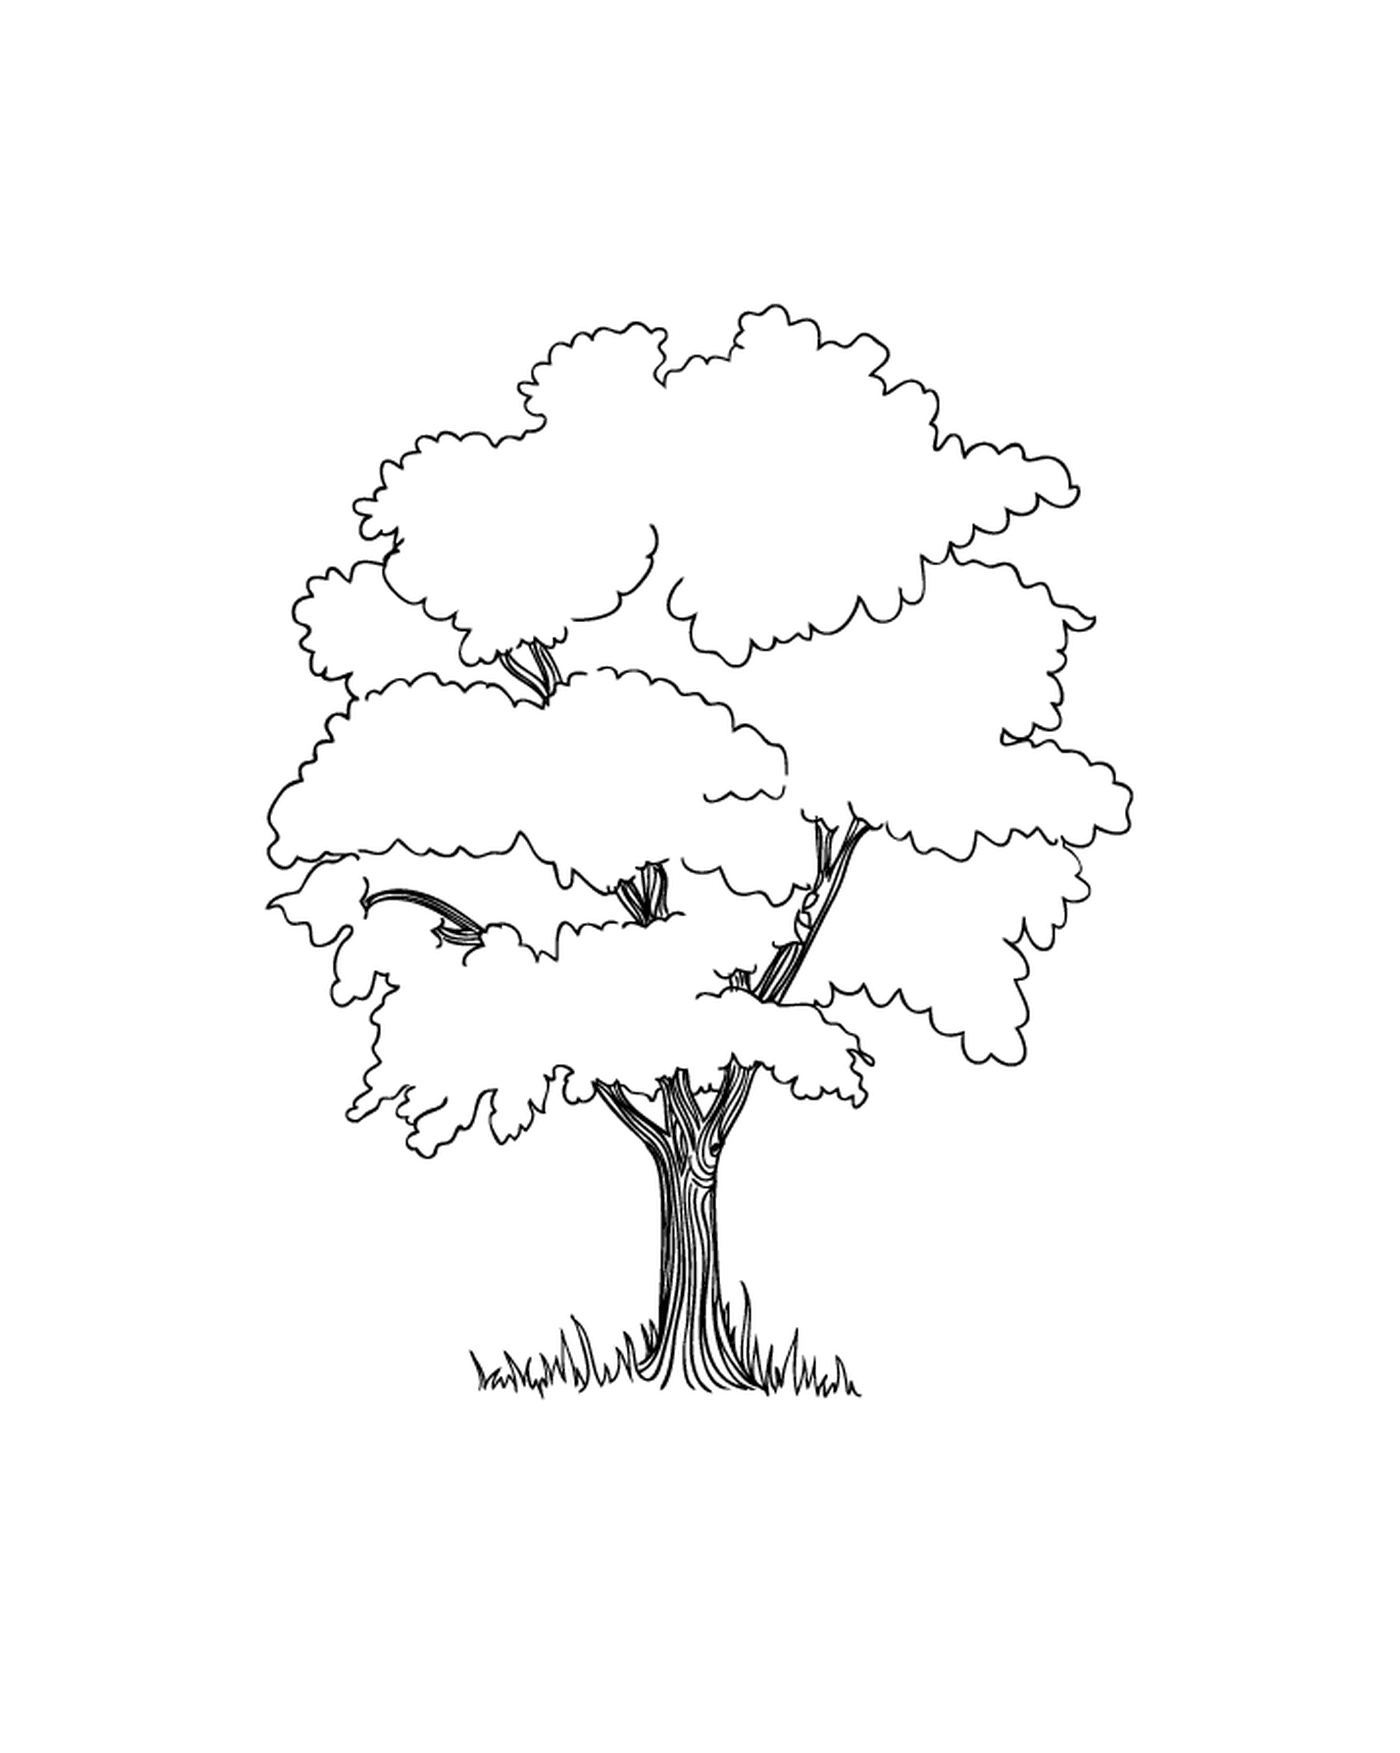  A tree 